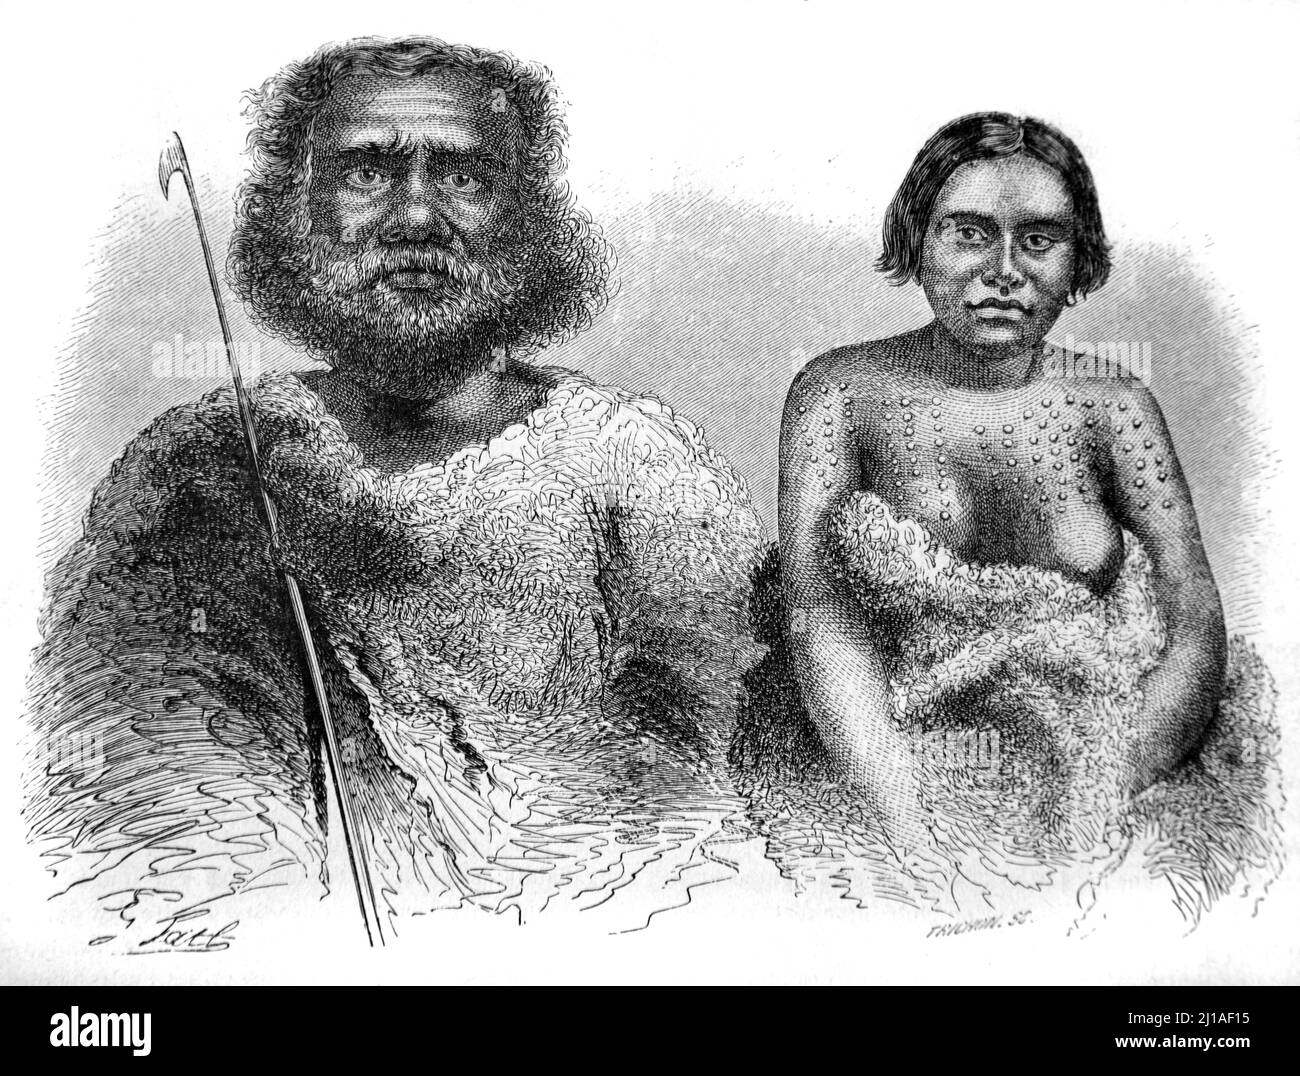 Portrait des peuples autochtones, des couples, des peuples autochtones ou des Aborigènes en Australie. Illustration ou gravure 1860. Banque D'Images